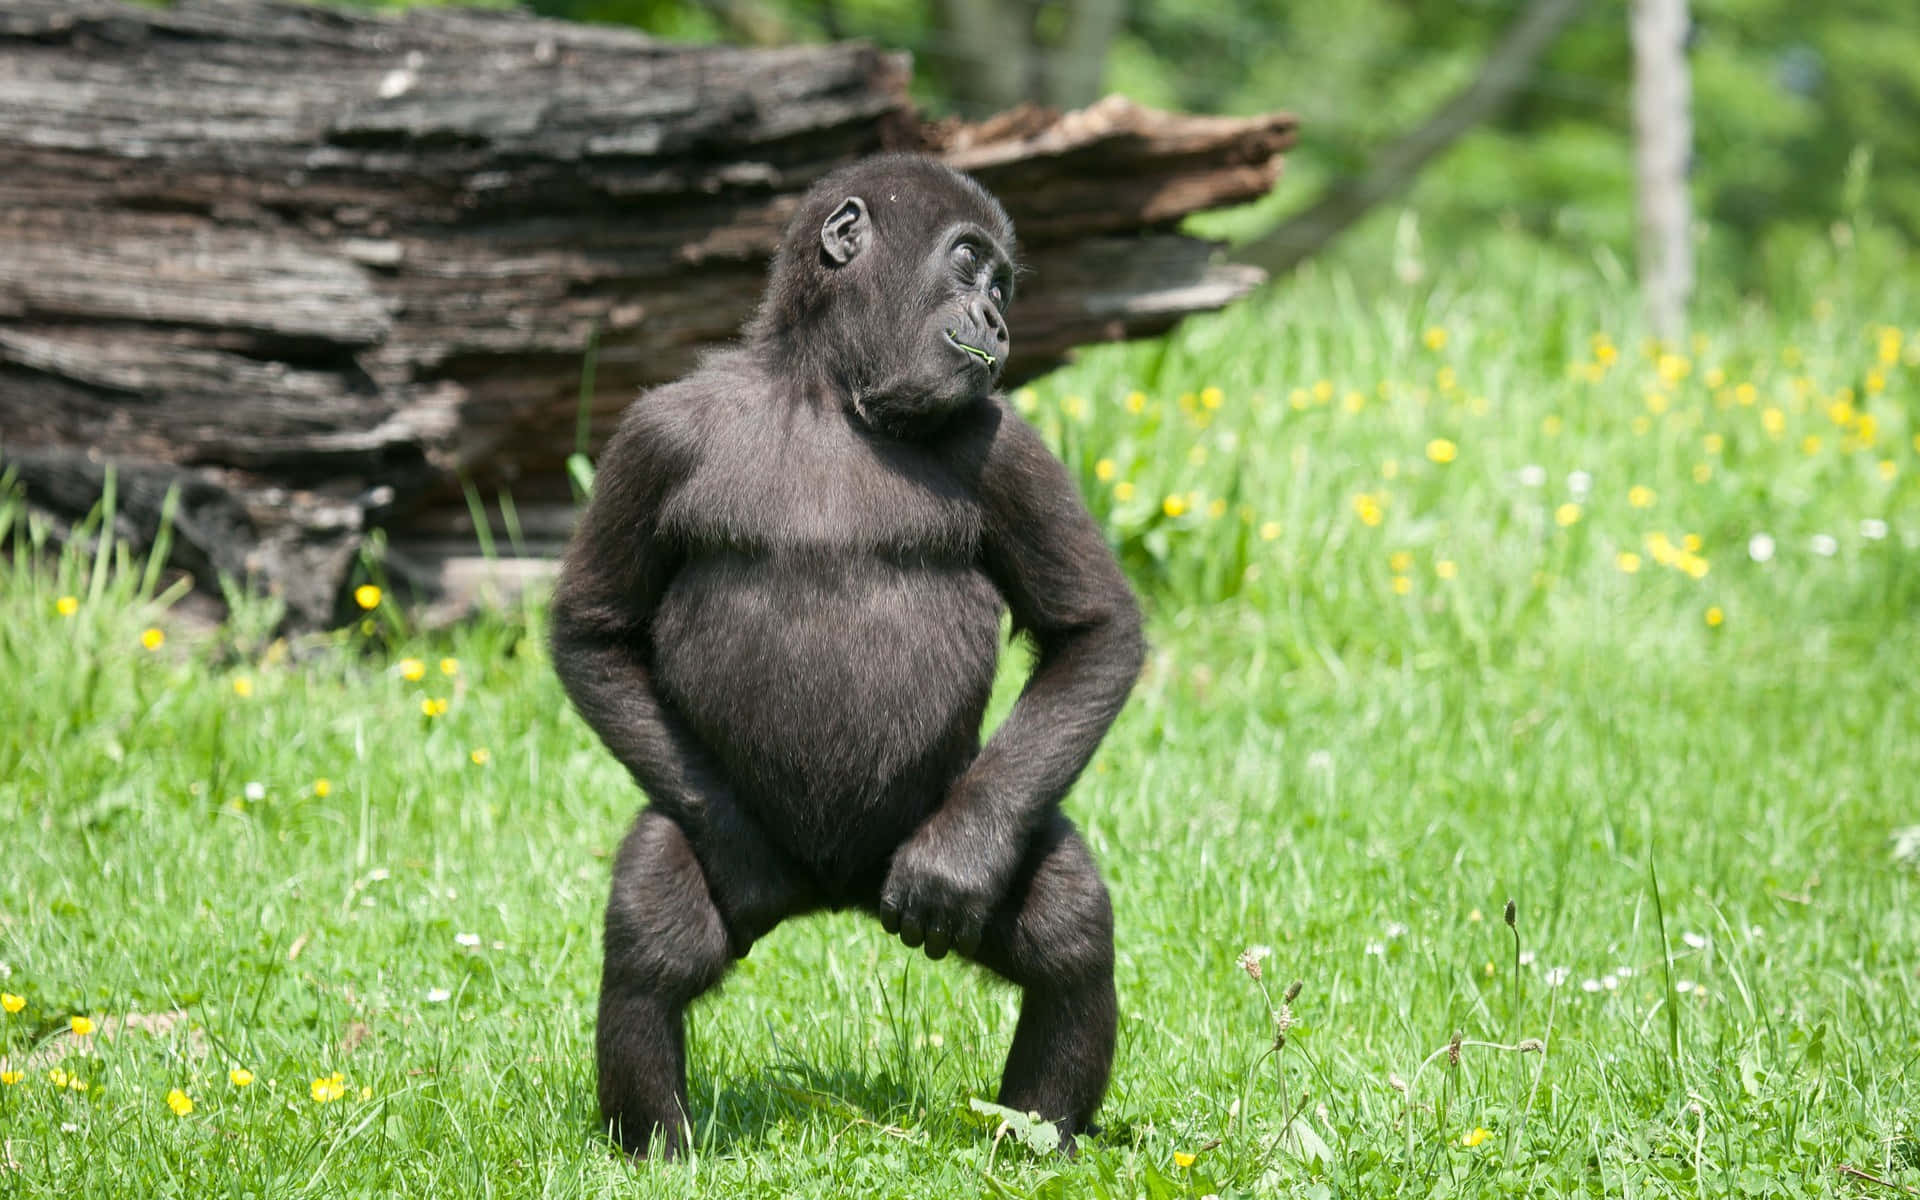 Best Gorilla Background Making Funny Gesture